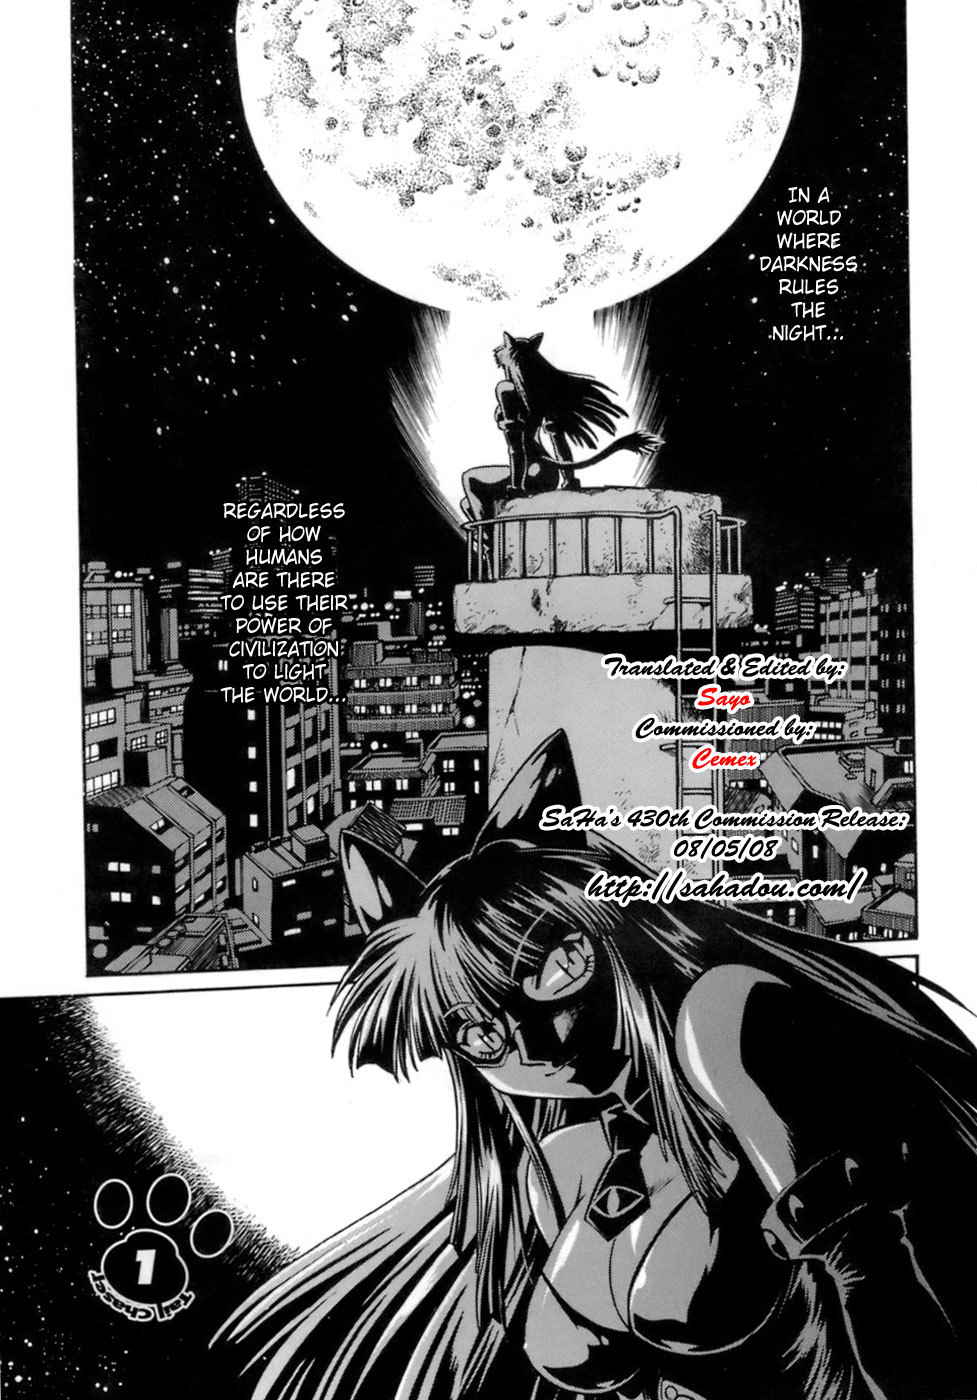 Tail Chaser Vol.1 5 hentai manga